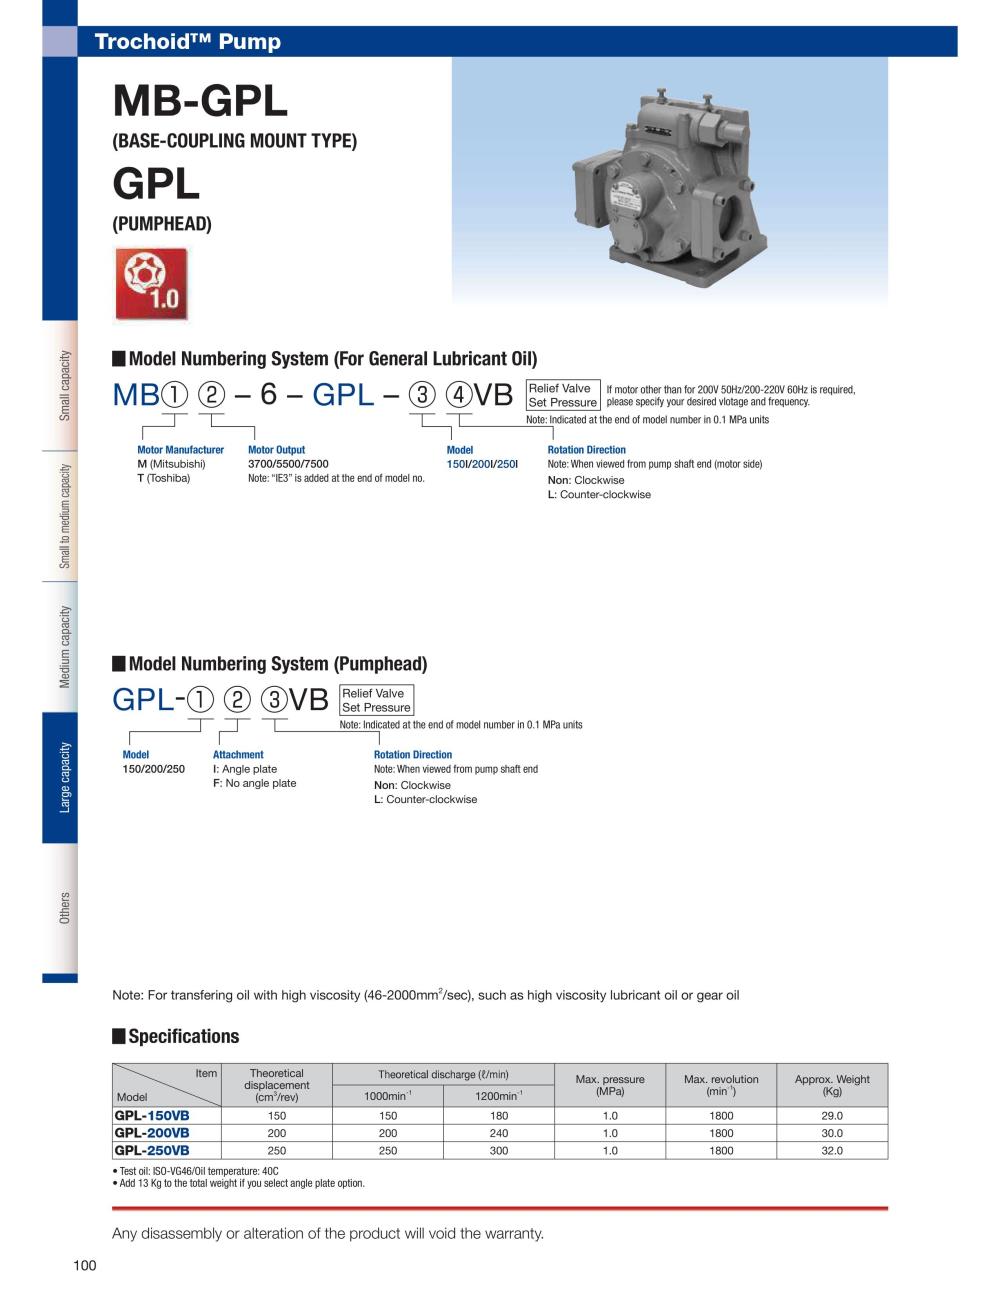 NOP Oil Pump TOP-MBT3700-6-GPL-IVB IE3 Series